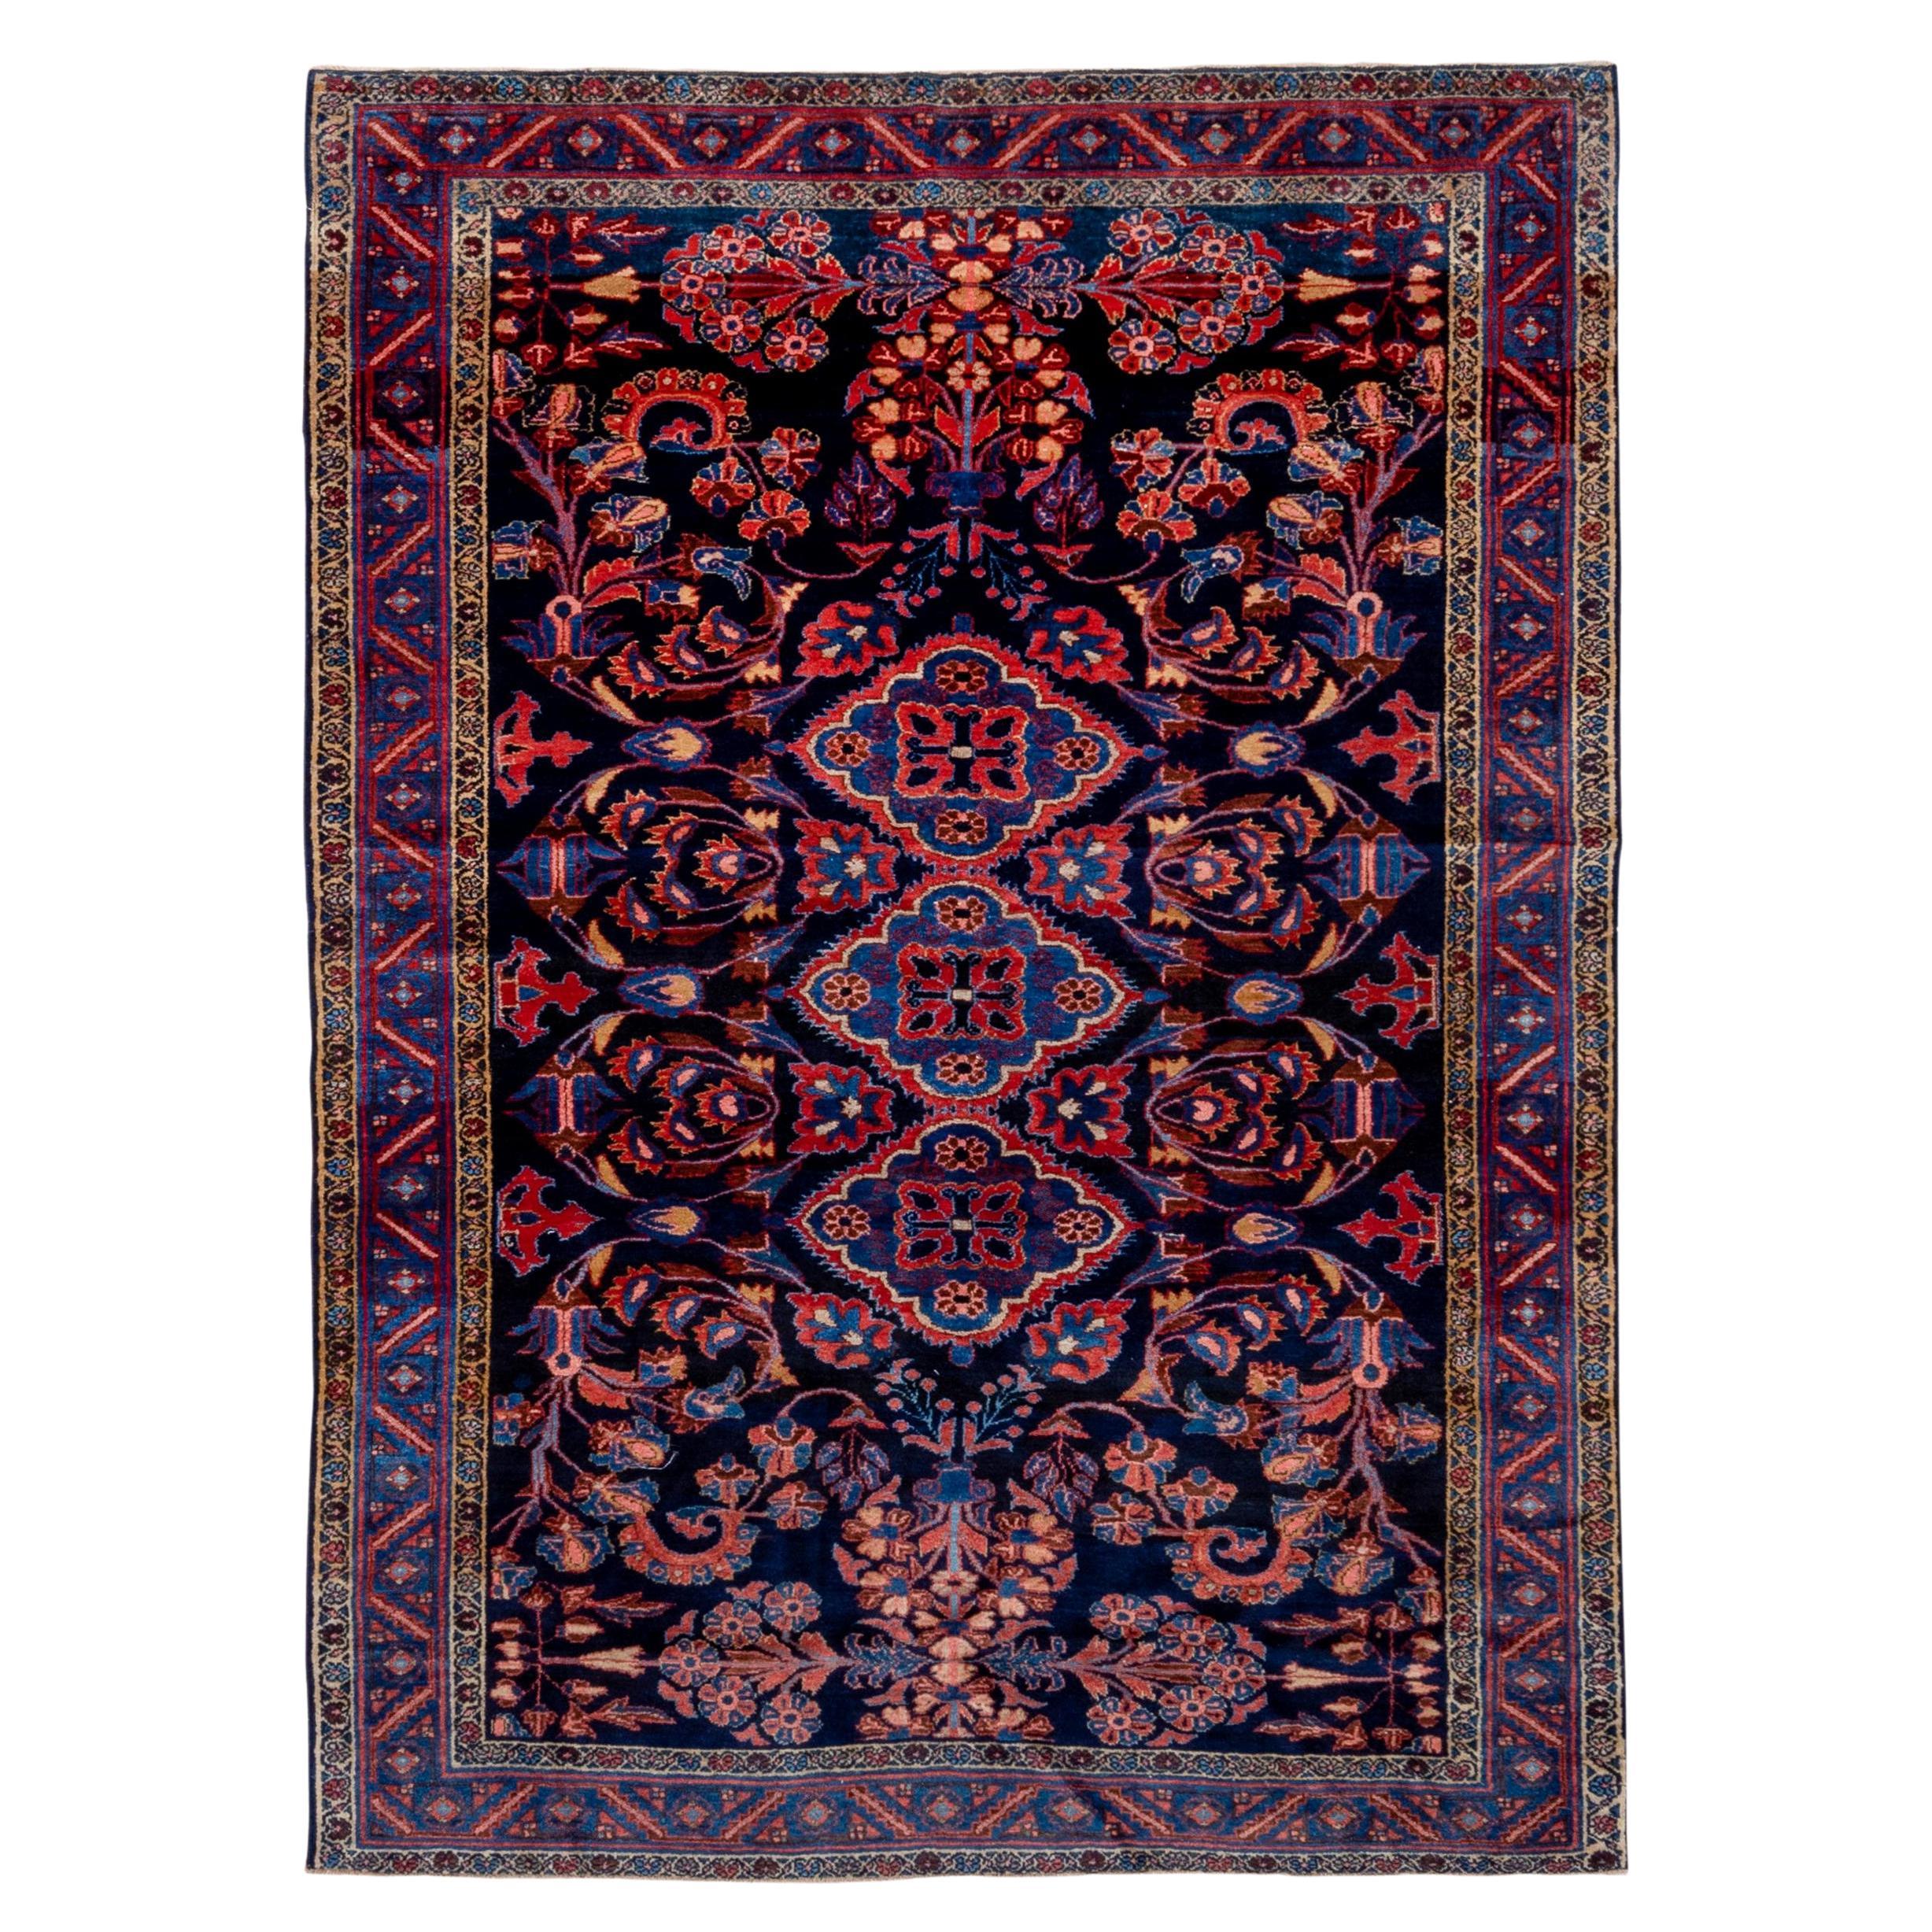 Attraktiver persischer Lilien-Teppich in Marineblau und Königsblau, leuchtende Farben